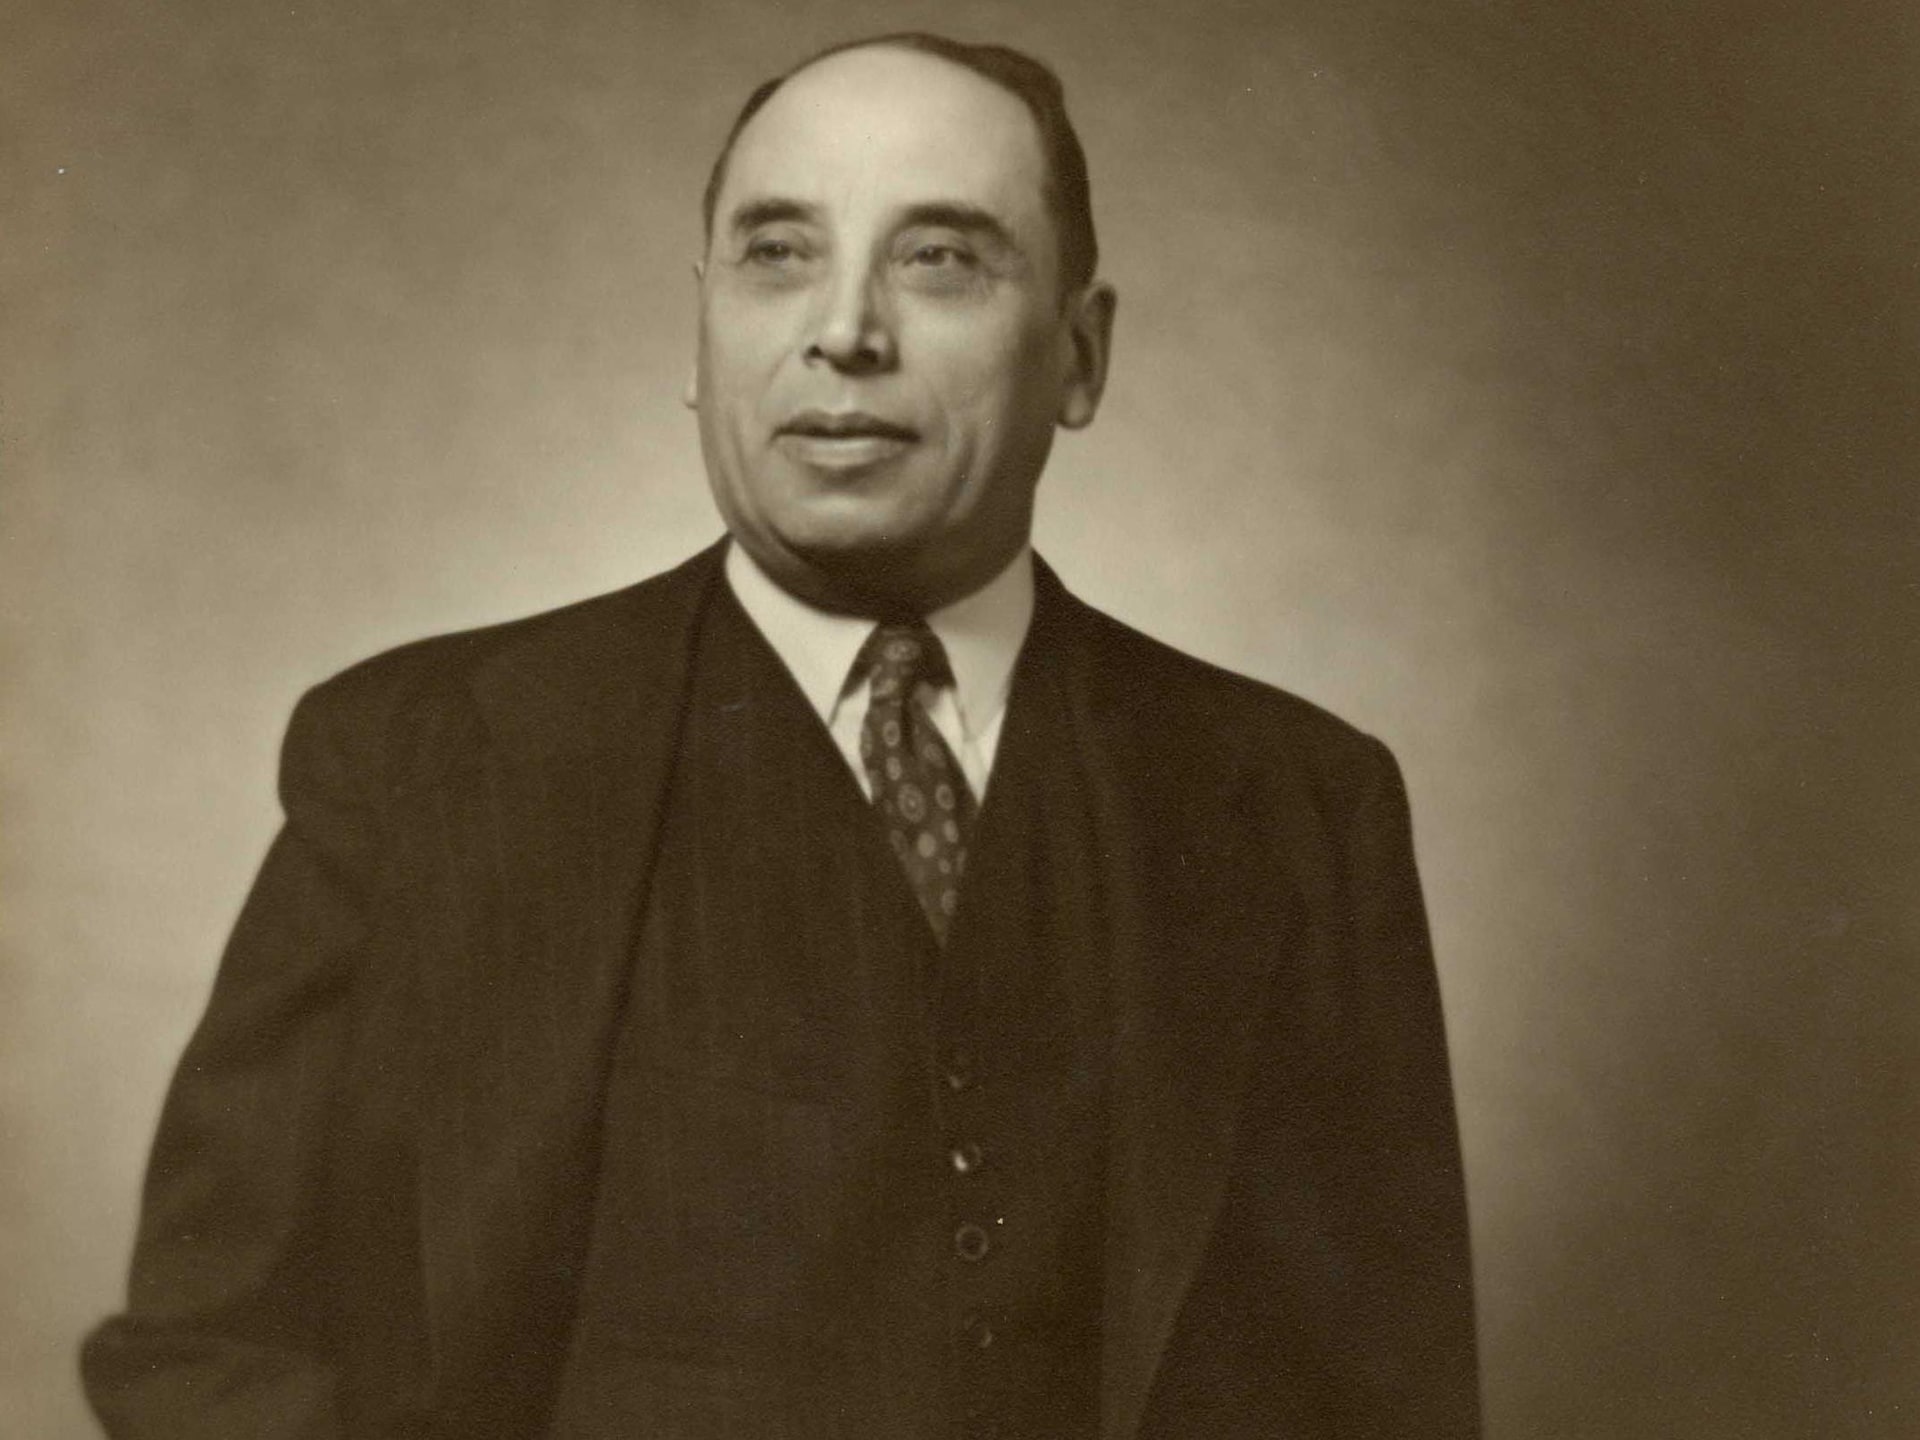 Portrait de Maurice Pollack, souriant, en complet cravate sur une image sépia typique des années 1960.